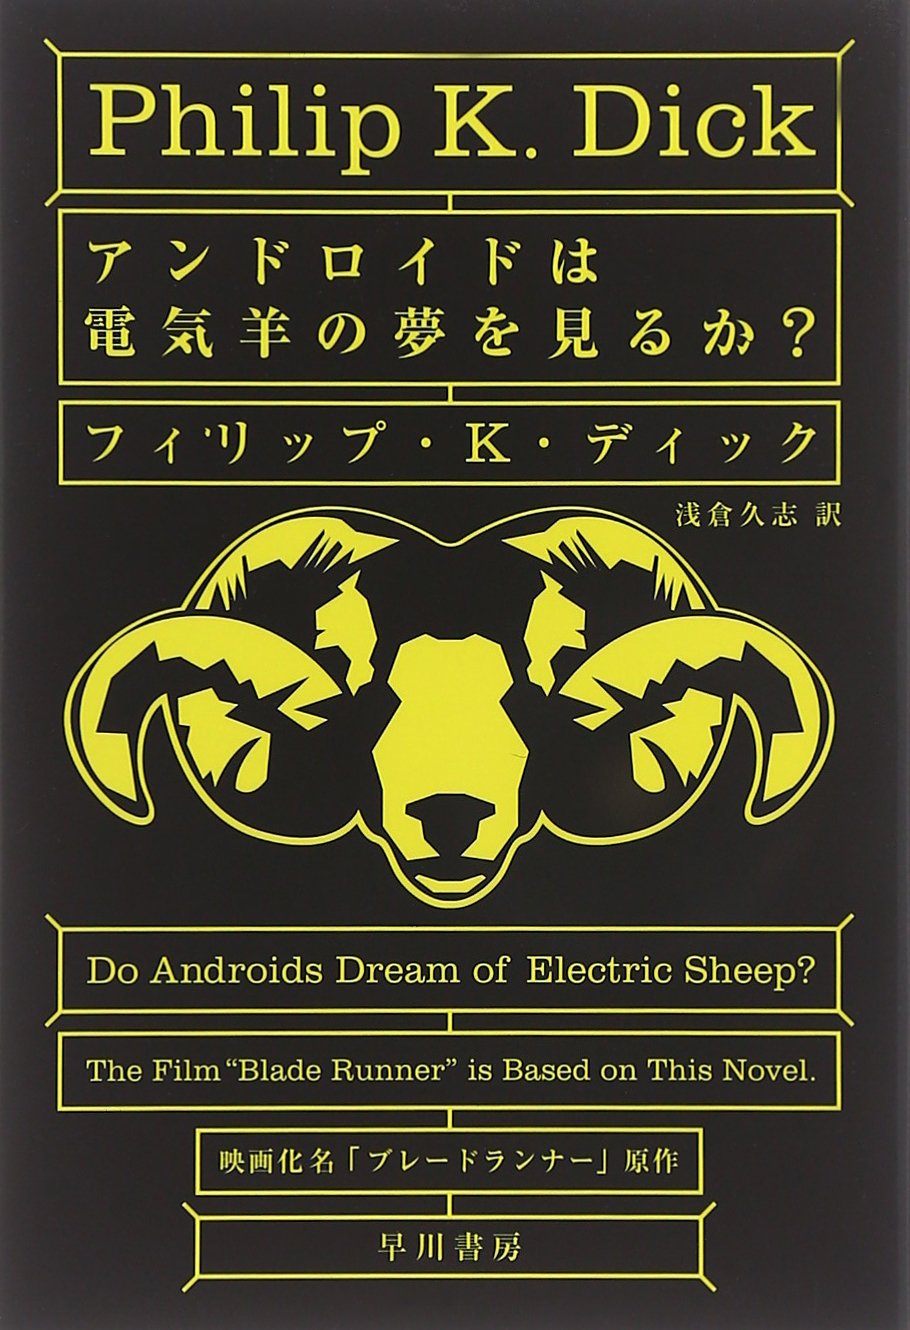 【福岡】フィリップ・K・ディック「アンドロイドは電気羊の夢を見るか?」